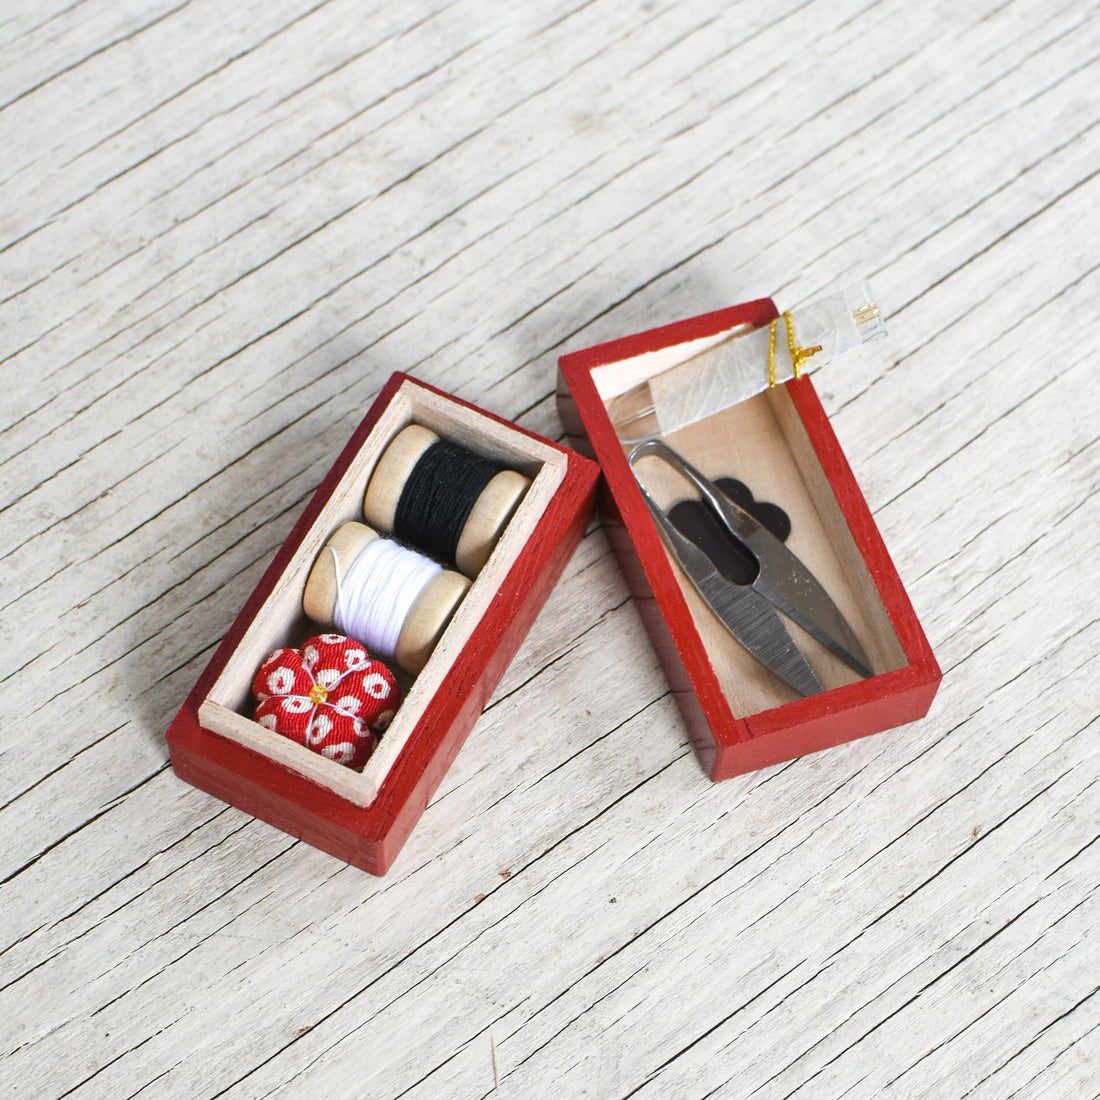 Small Wood Tiered Sewing Box — flippityjane fabrics